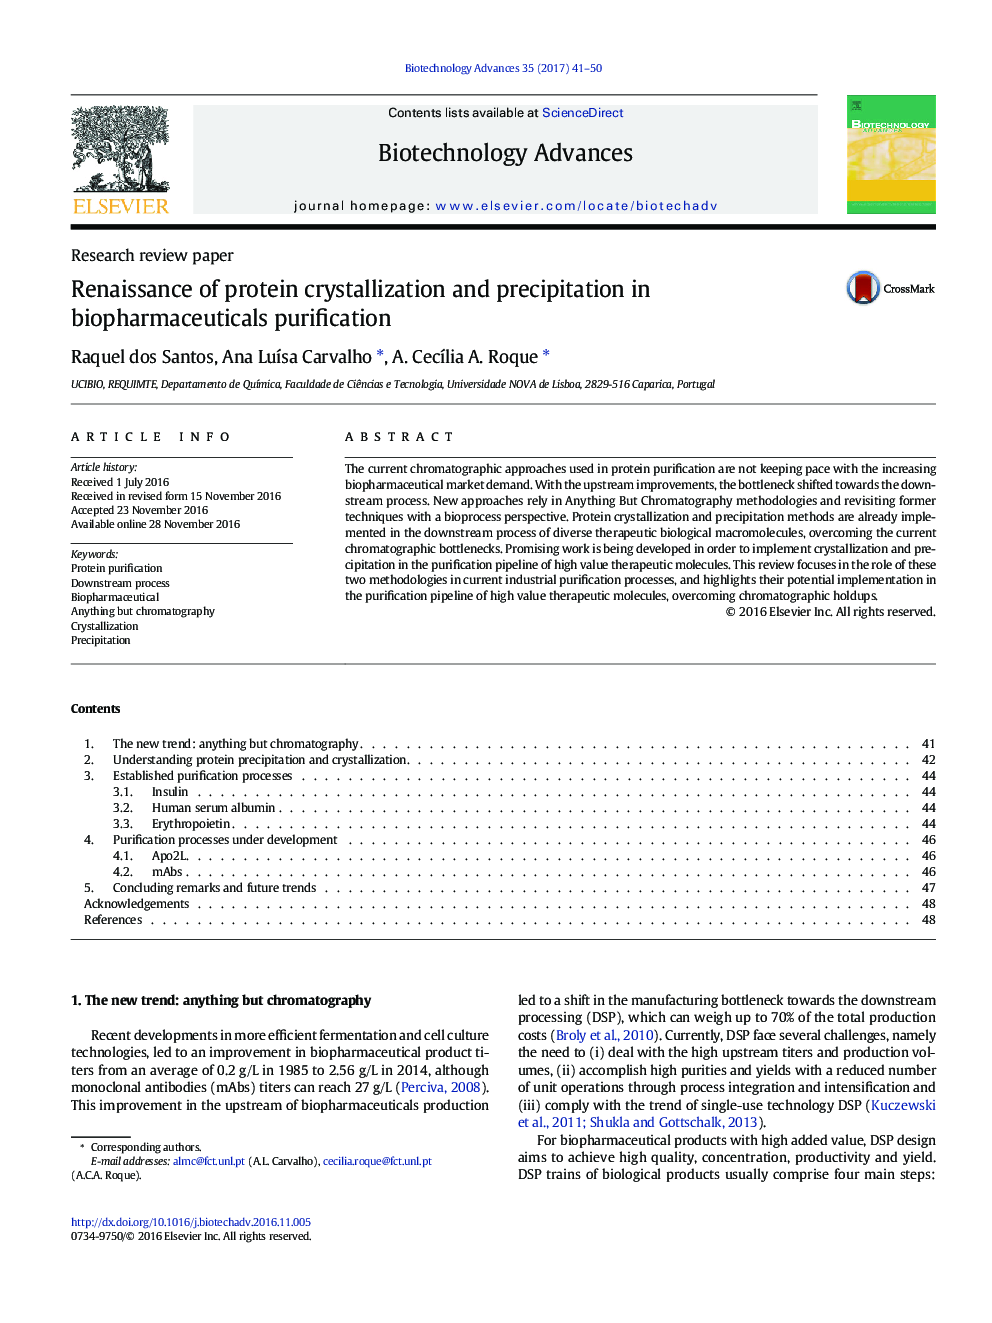 مقاله بررسی تحقیقات بازسازی پروتئین کریستالیزاسیون و بارش در تصفیه بیوفارمینتیک